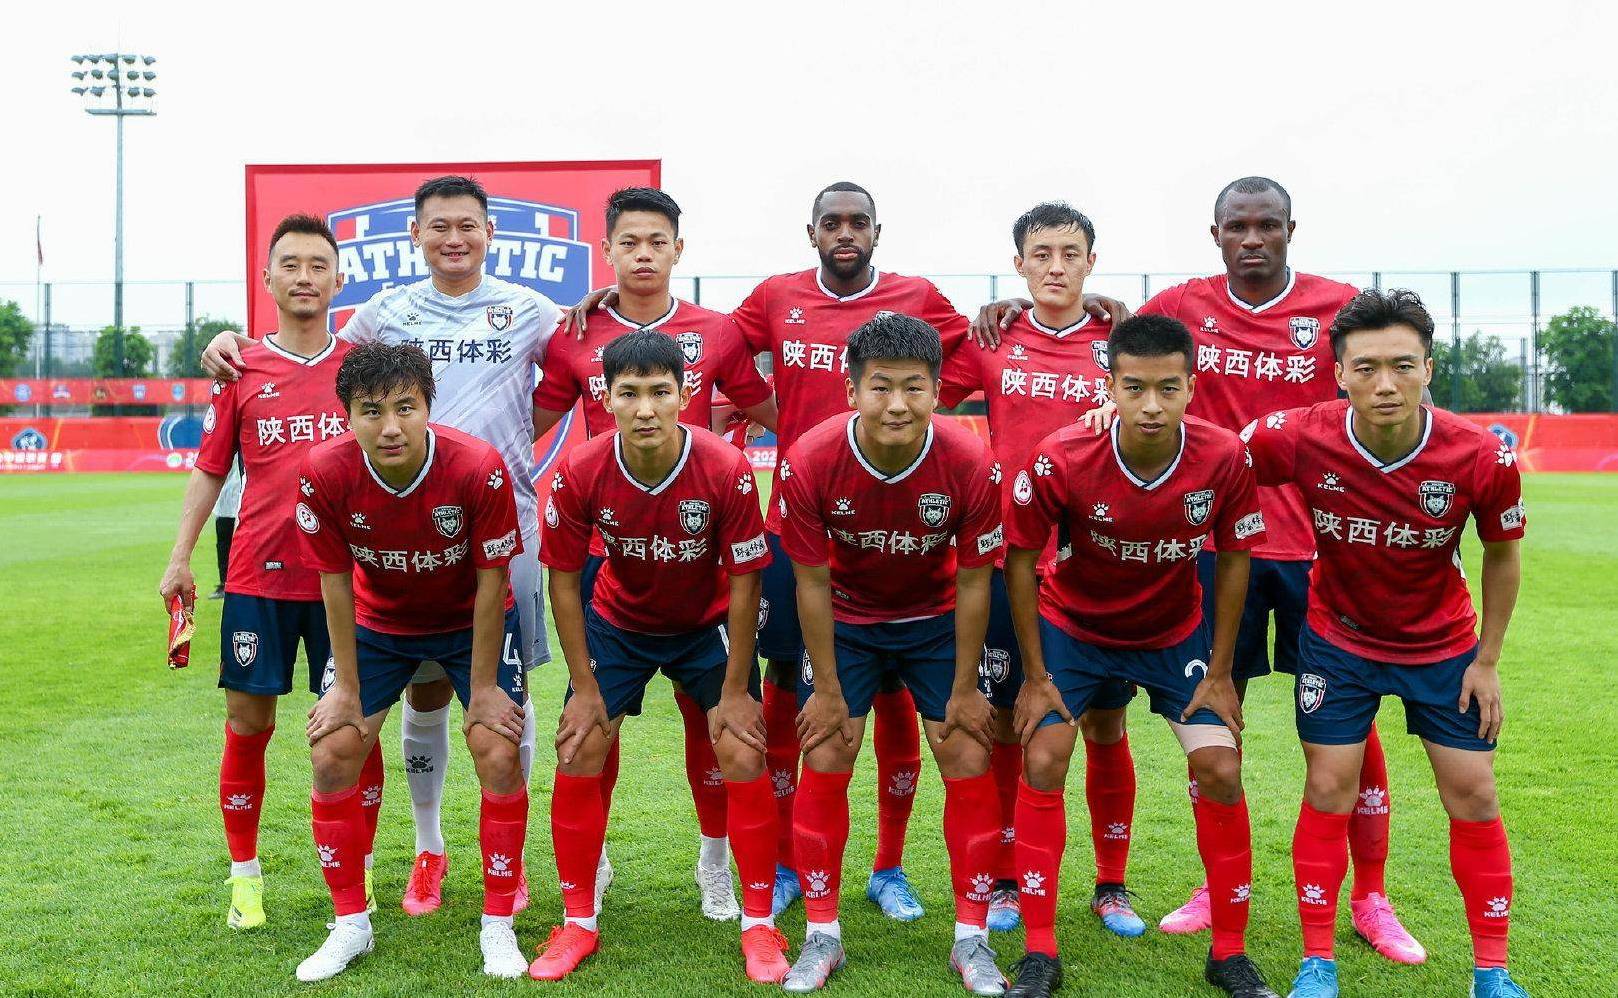 河北队0-1负于广州队 感谢河北队球迷对于球队的支持和鼓励-直播吧zhibo8.cc